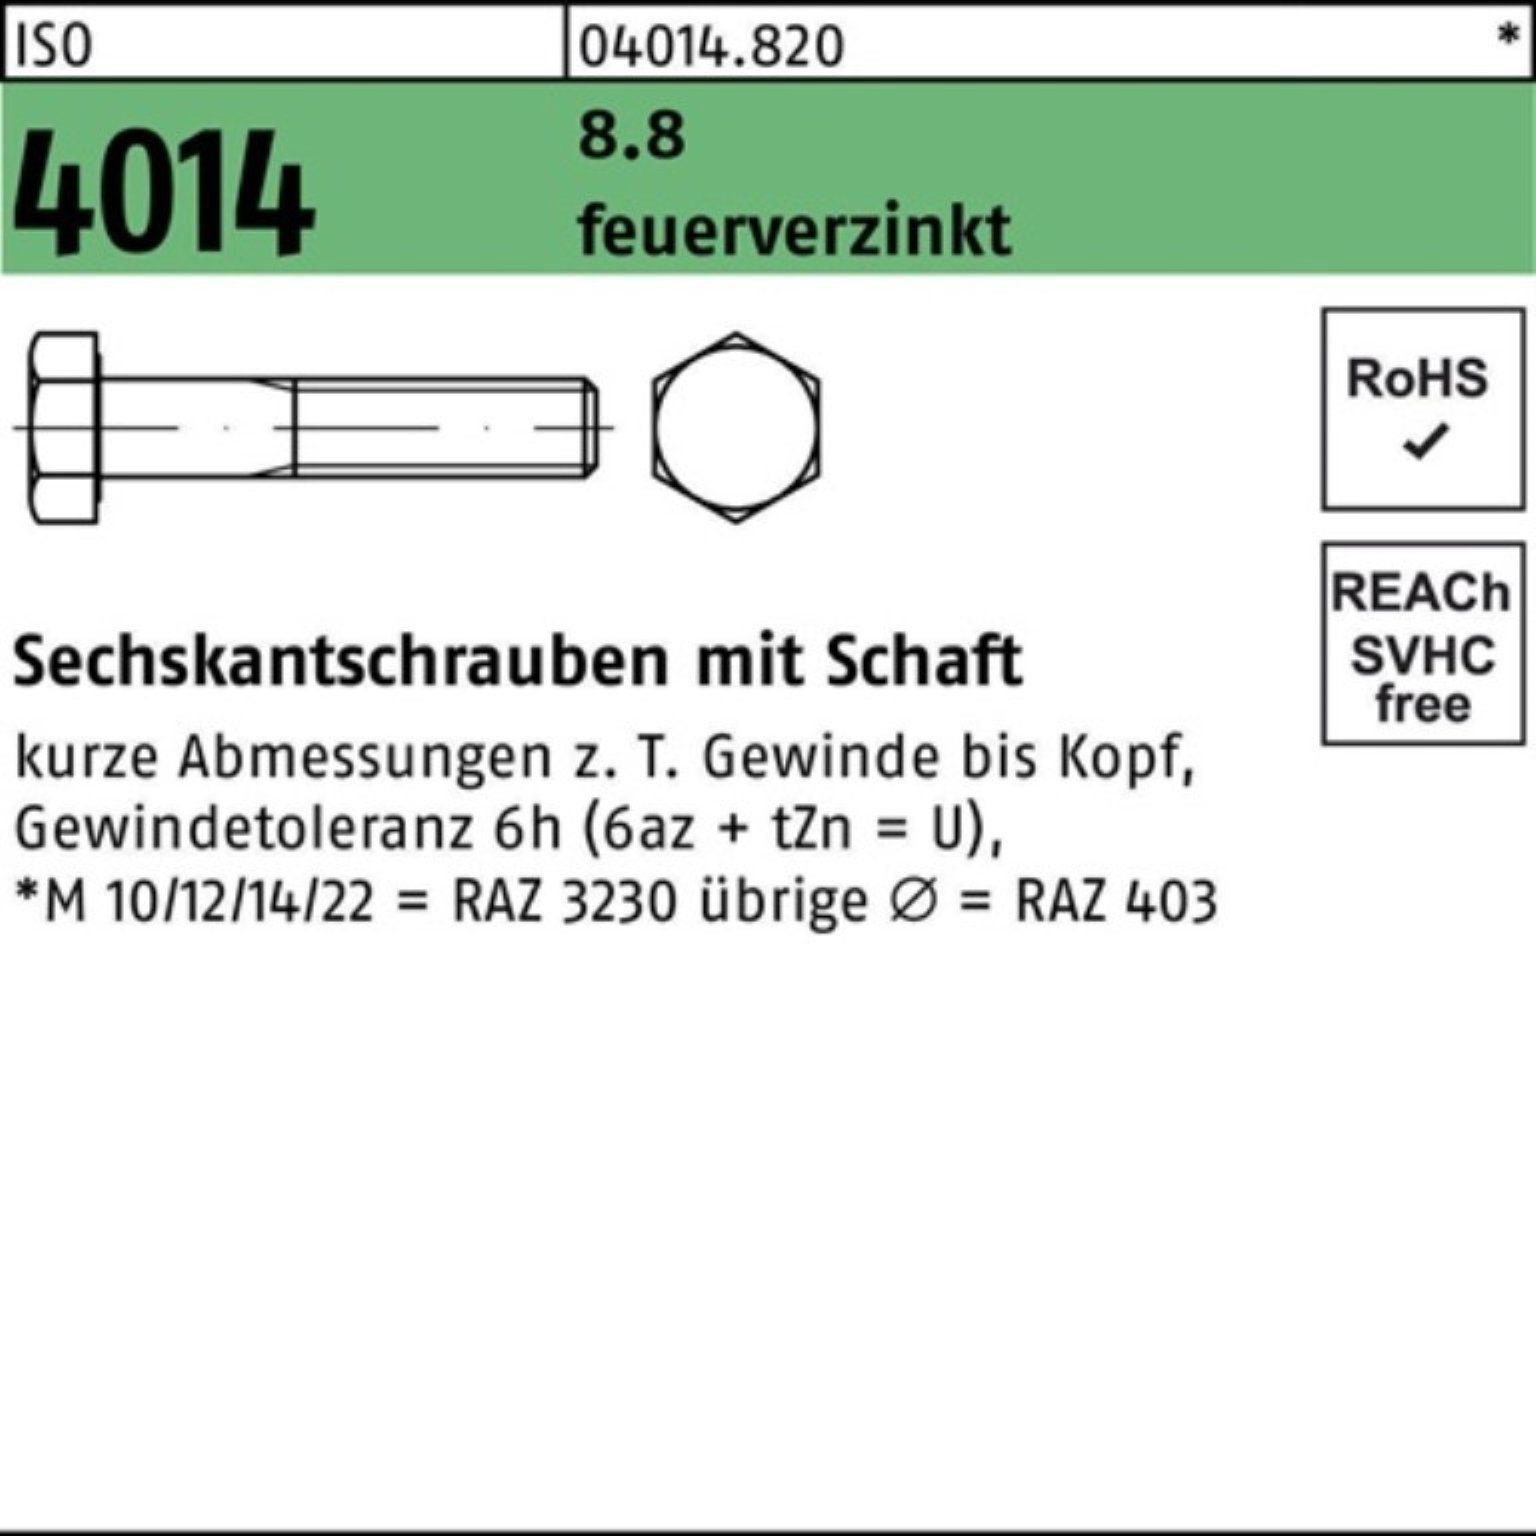 Bufab Sechskantschraube 100er Pack Sechskantschraube ISO 4014 Schaft M12x 60 8.8 feuerverz. 10